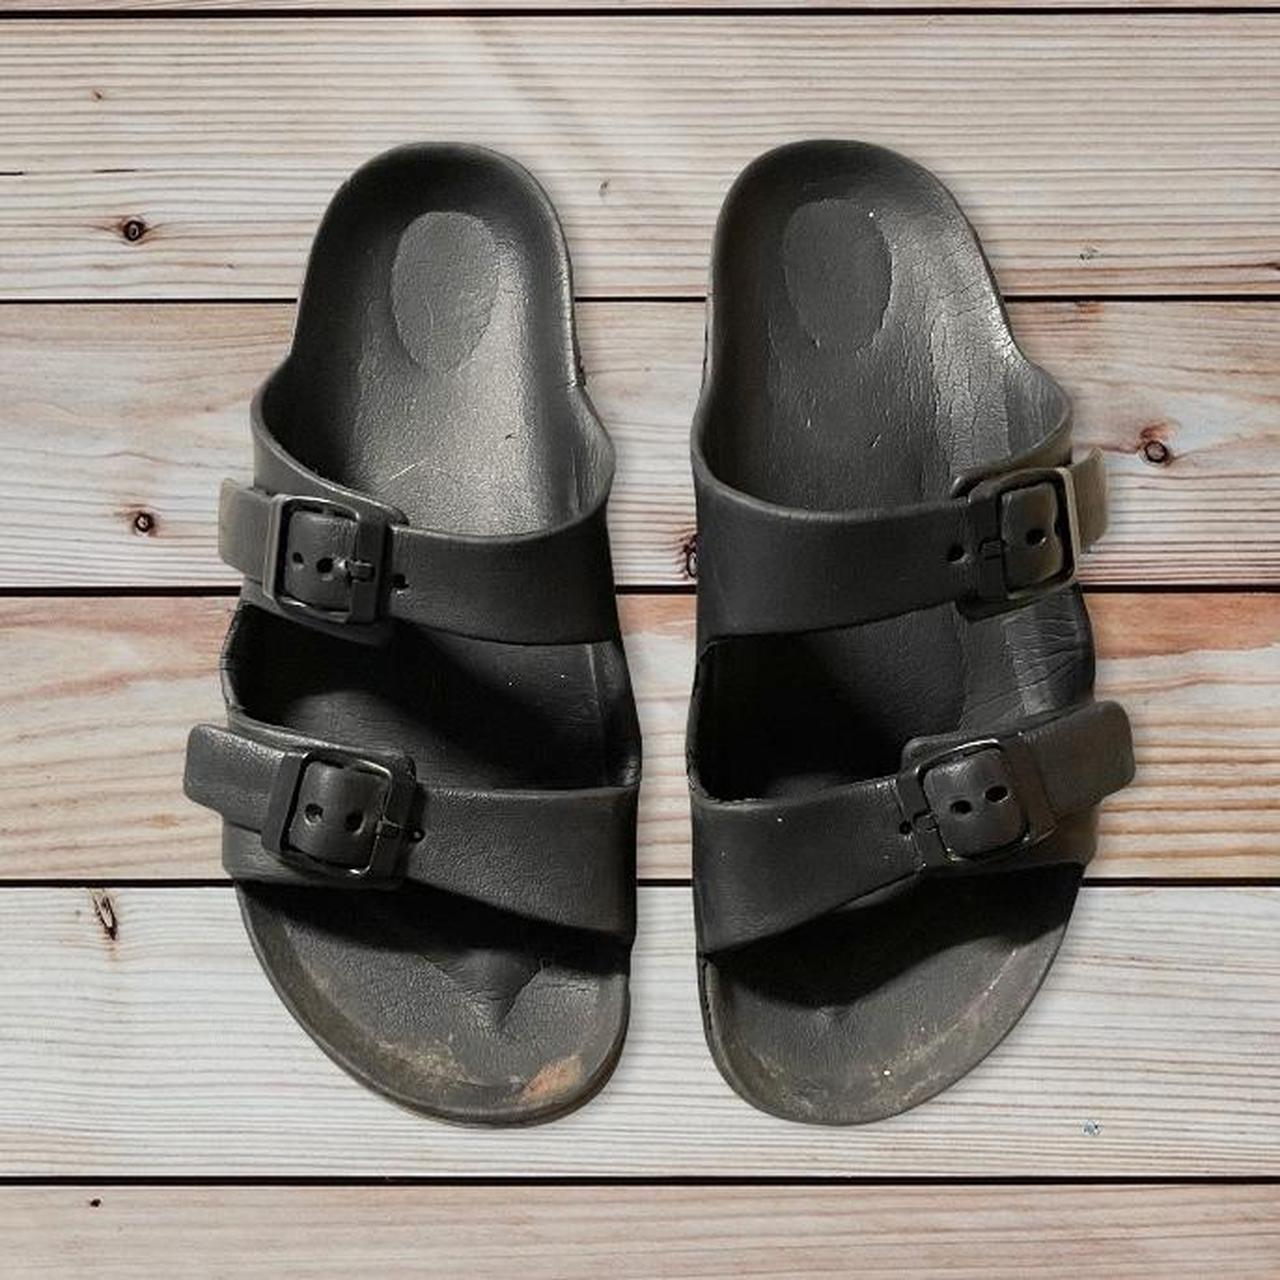 Product Image 1 - Black Birkenstock like sandals 
Used